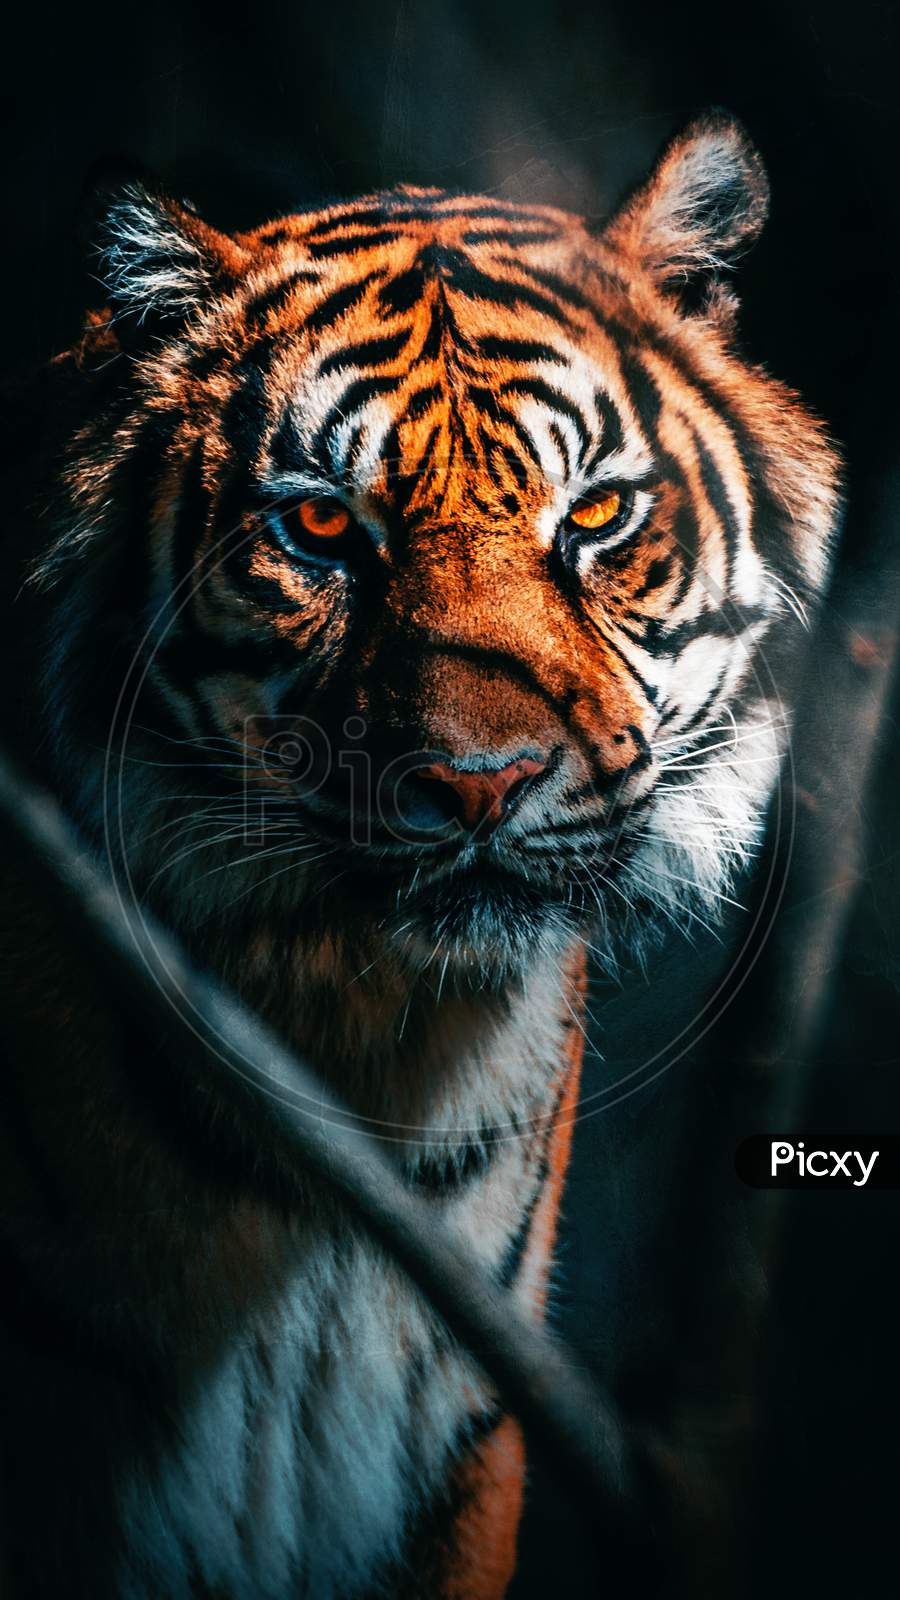 wallpaper hd tiger